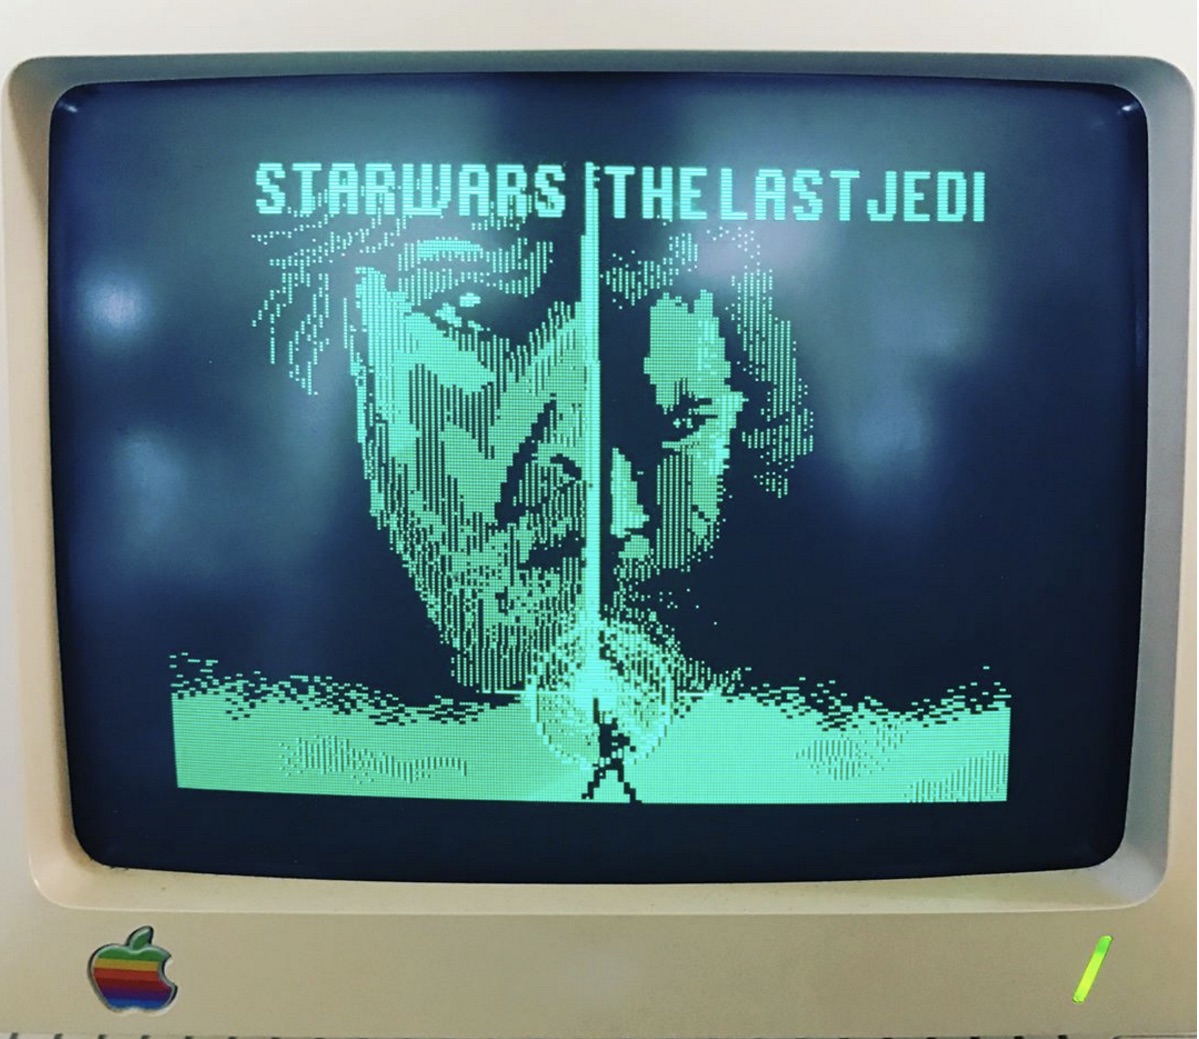 'Star Wars: The Last Jedi' Trailer Recreated on Vintage Apple IIc Computer